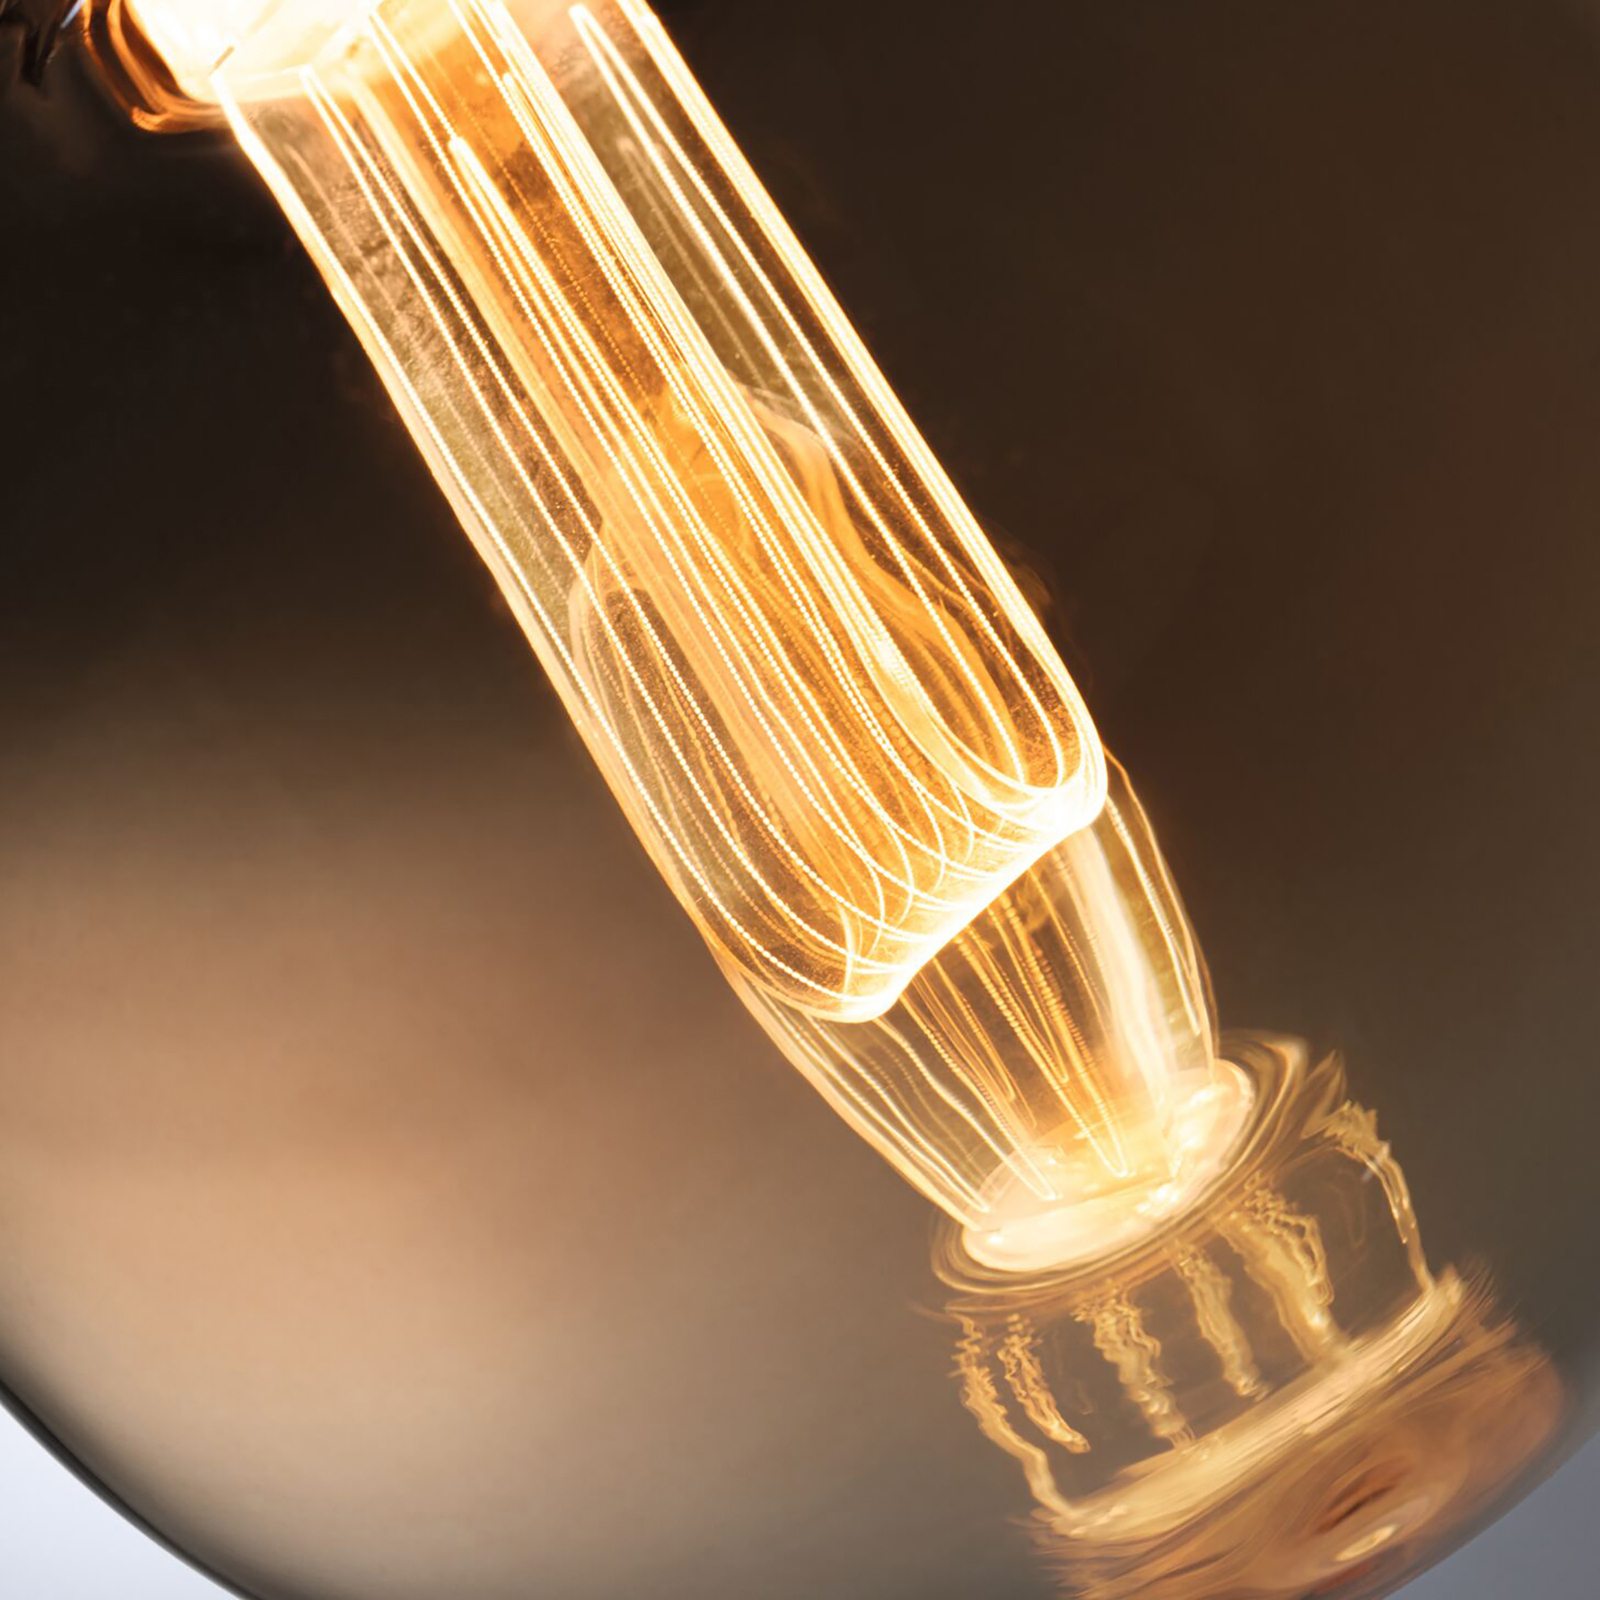 Paulmann LED-Lampe E27 3,5 W Arc 1.800K G125 gold